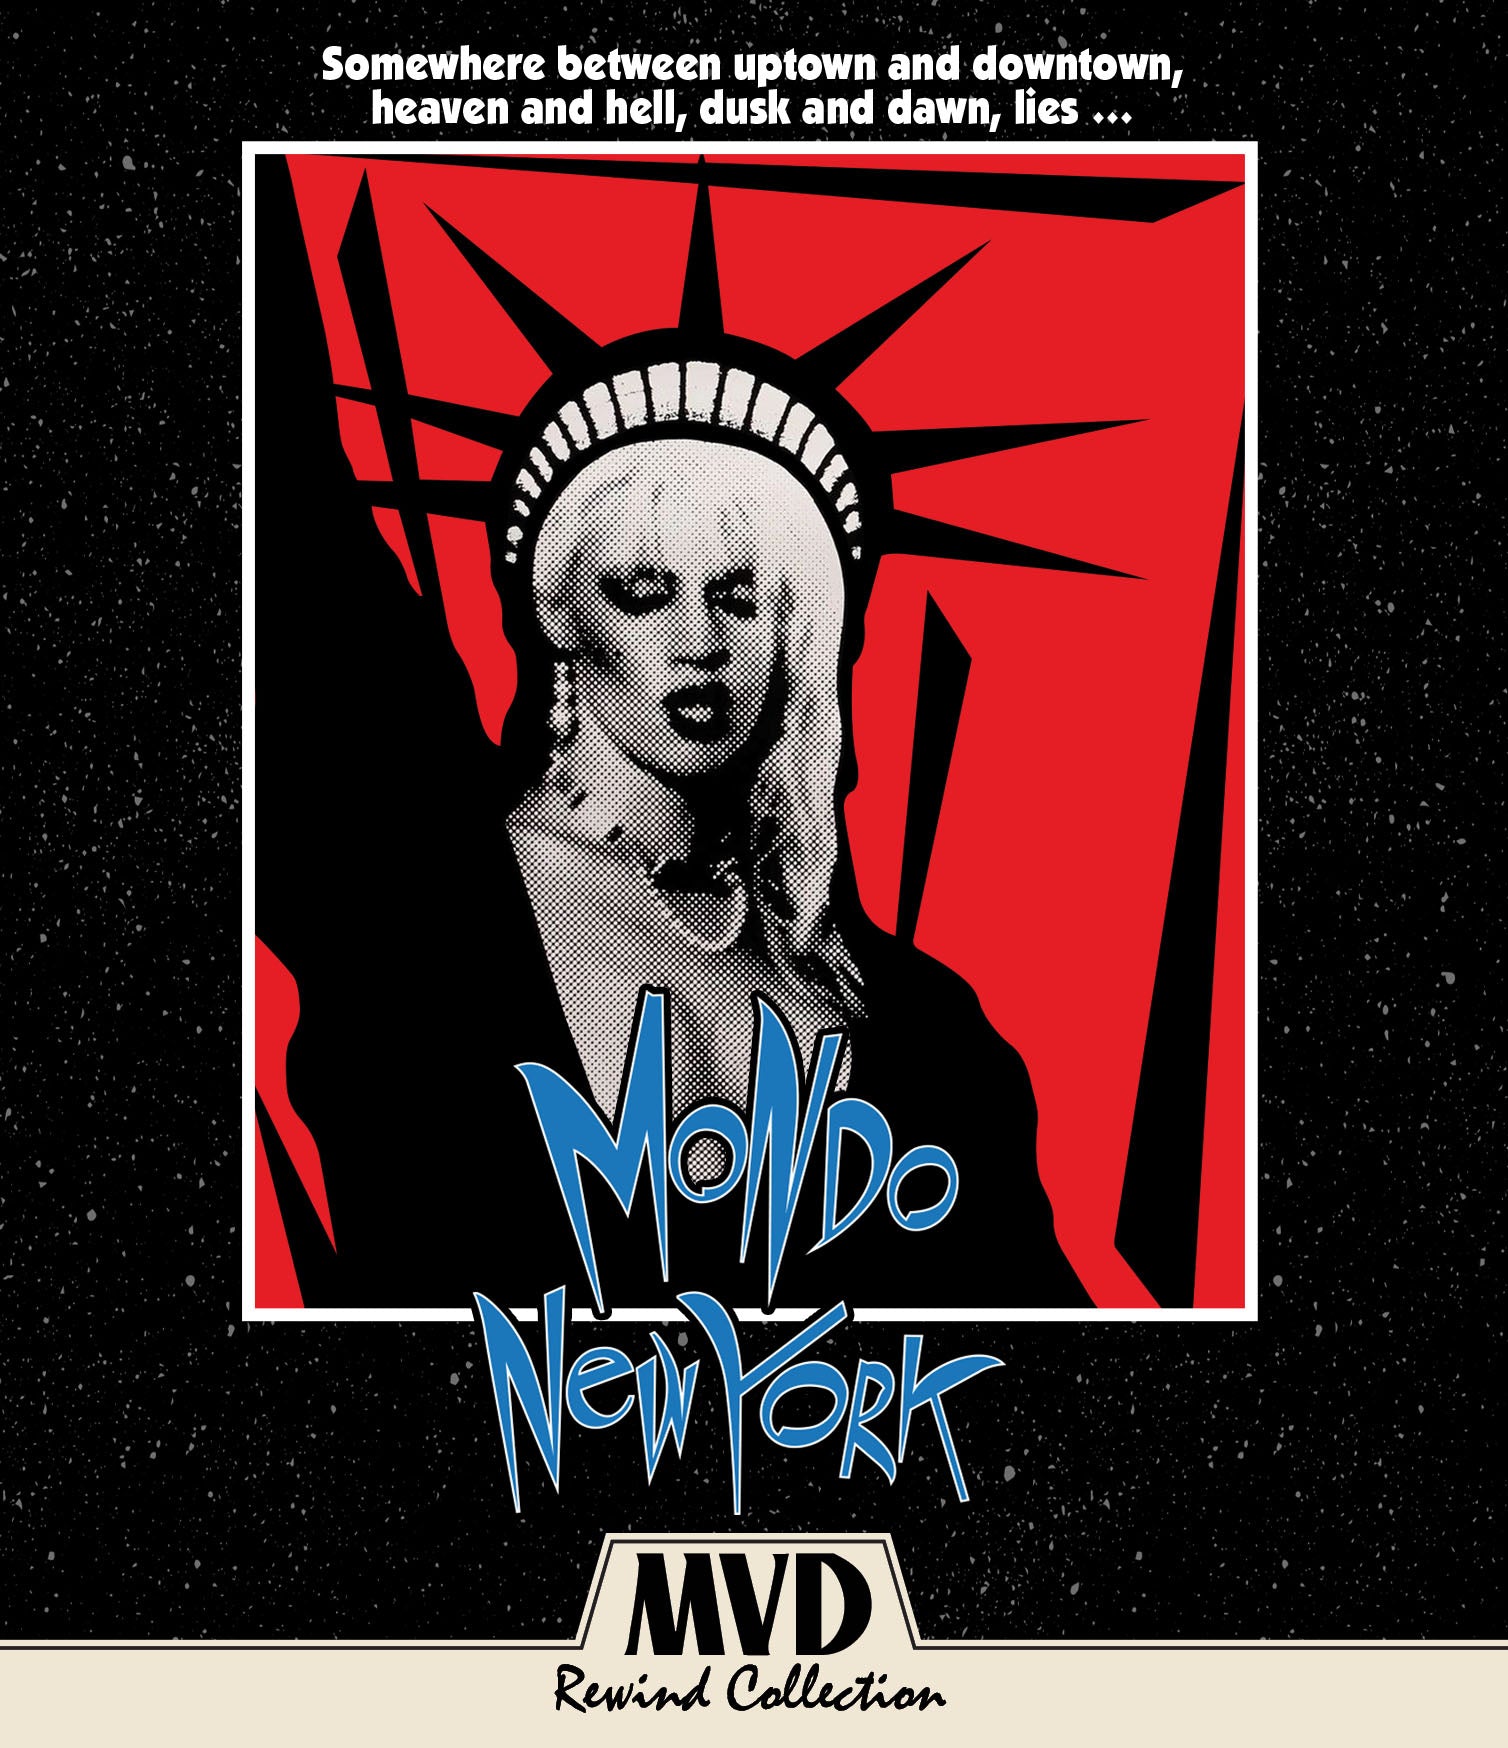 MONDO NEW YORK BLU-RAY/CD